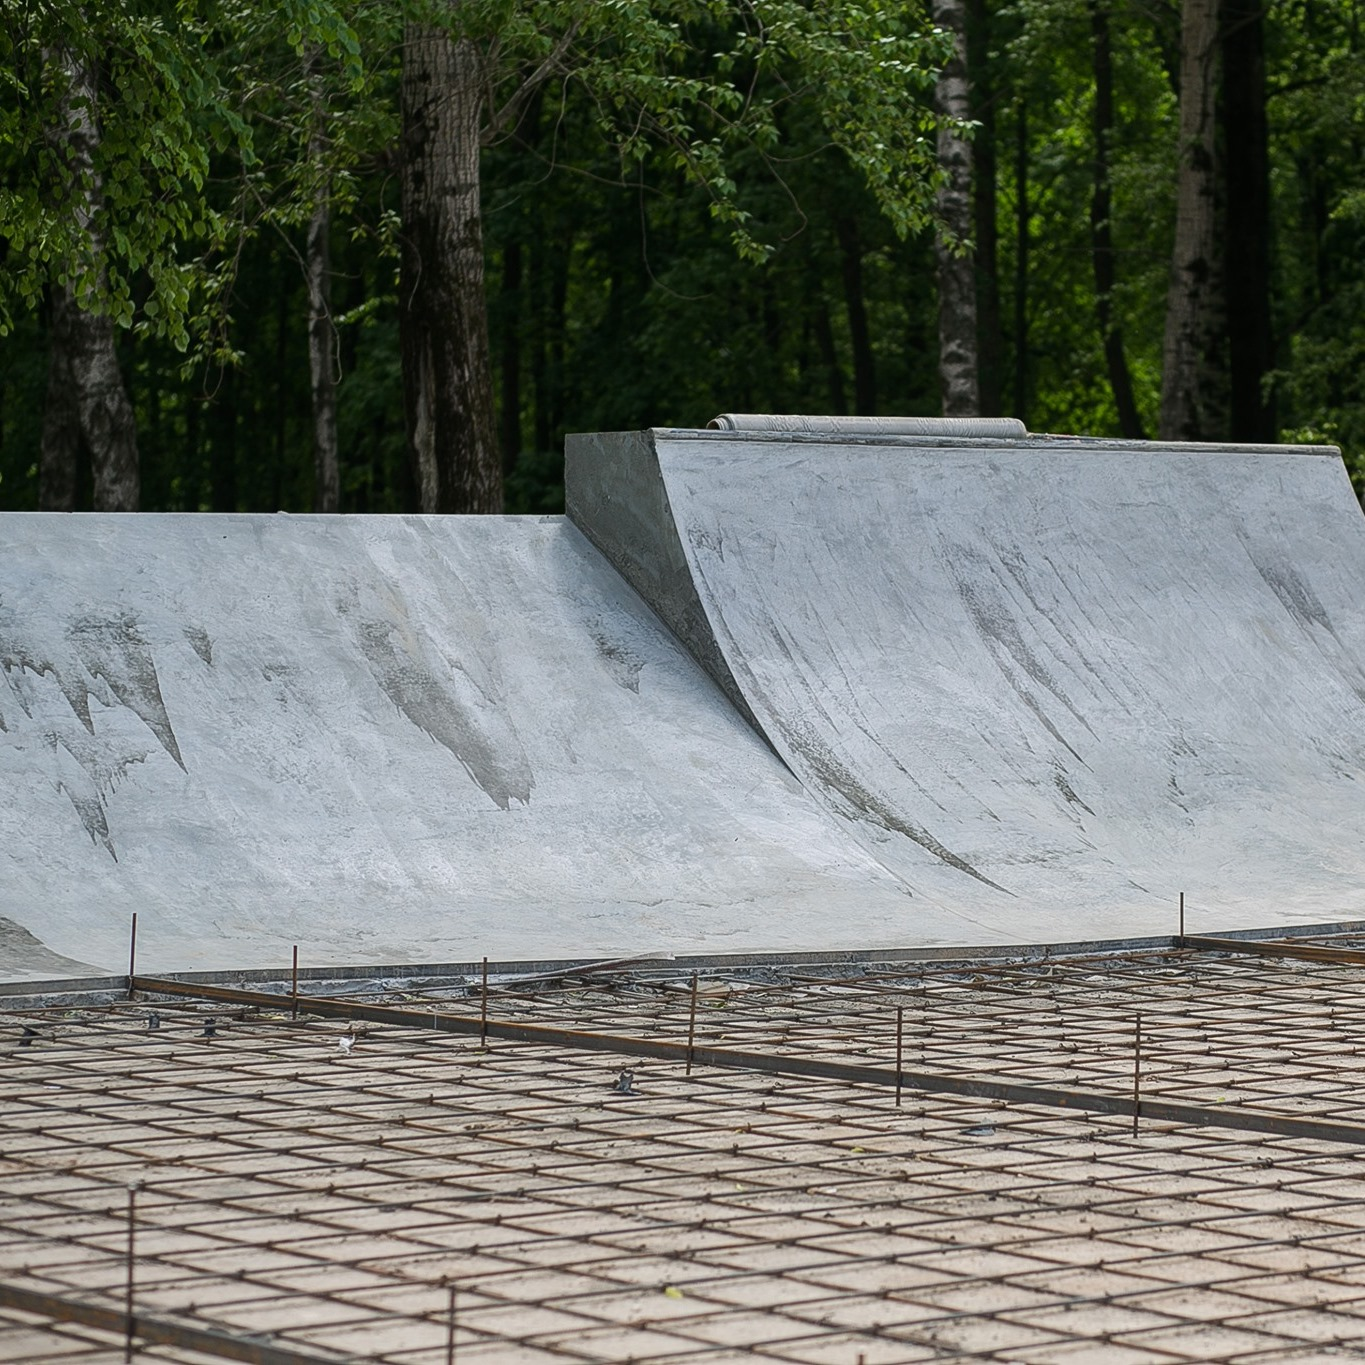 Скейт-парк площадью 1600 кв. м появится в нижегородской “Швейцарии” к 15 июня - фото 2